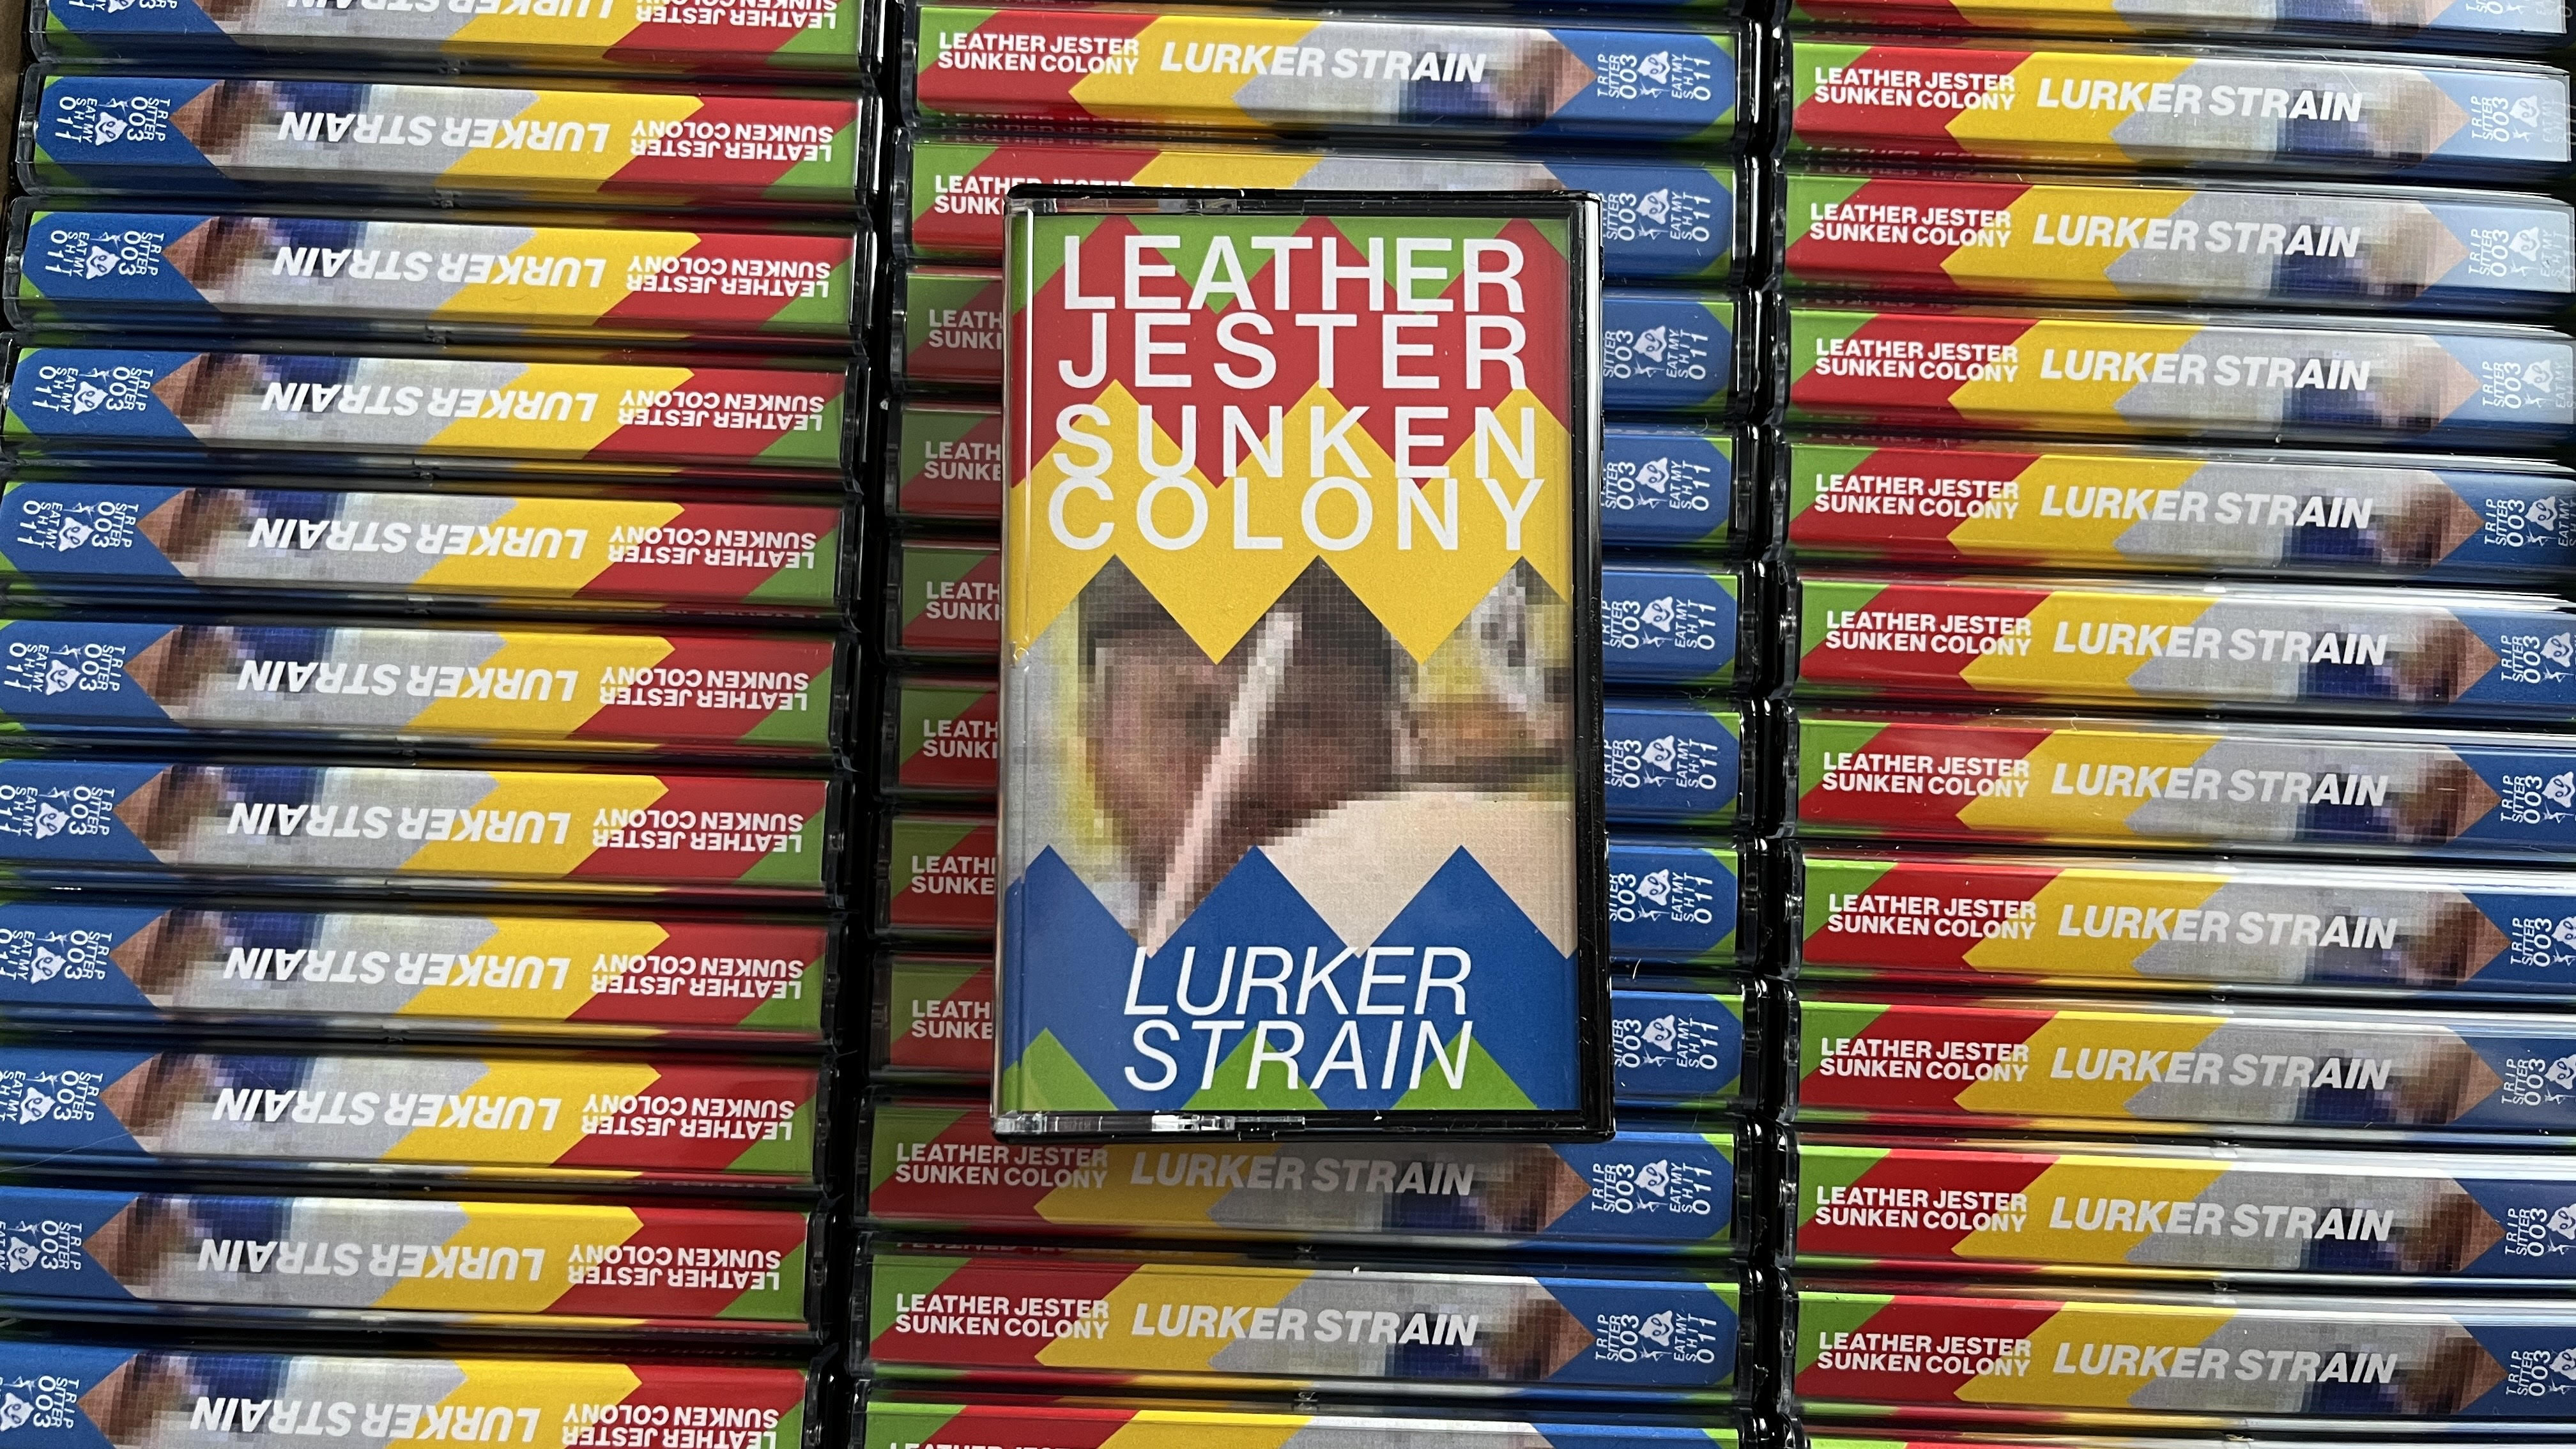 leather jester sunken colony lurker strain